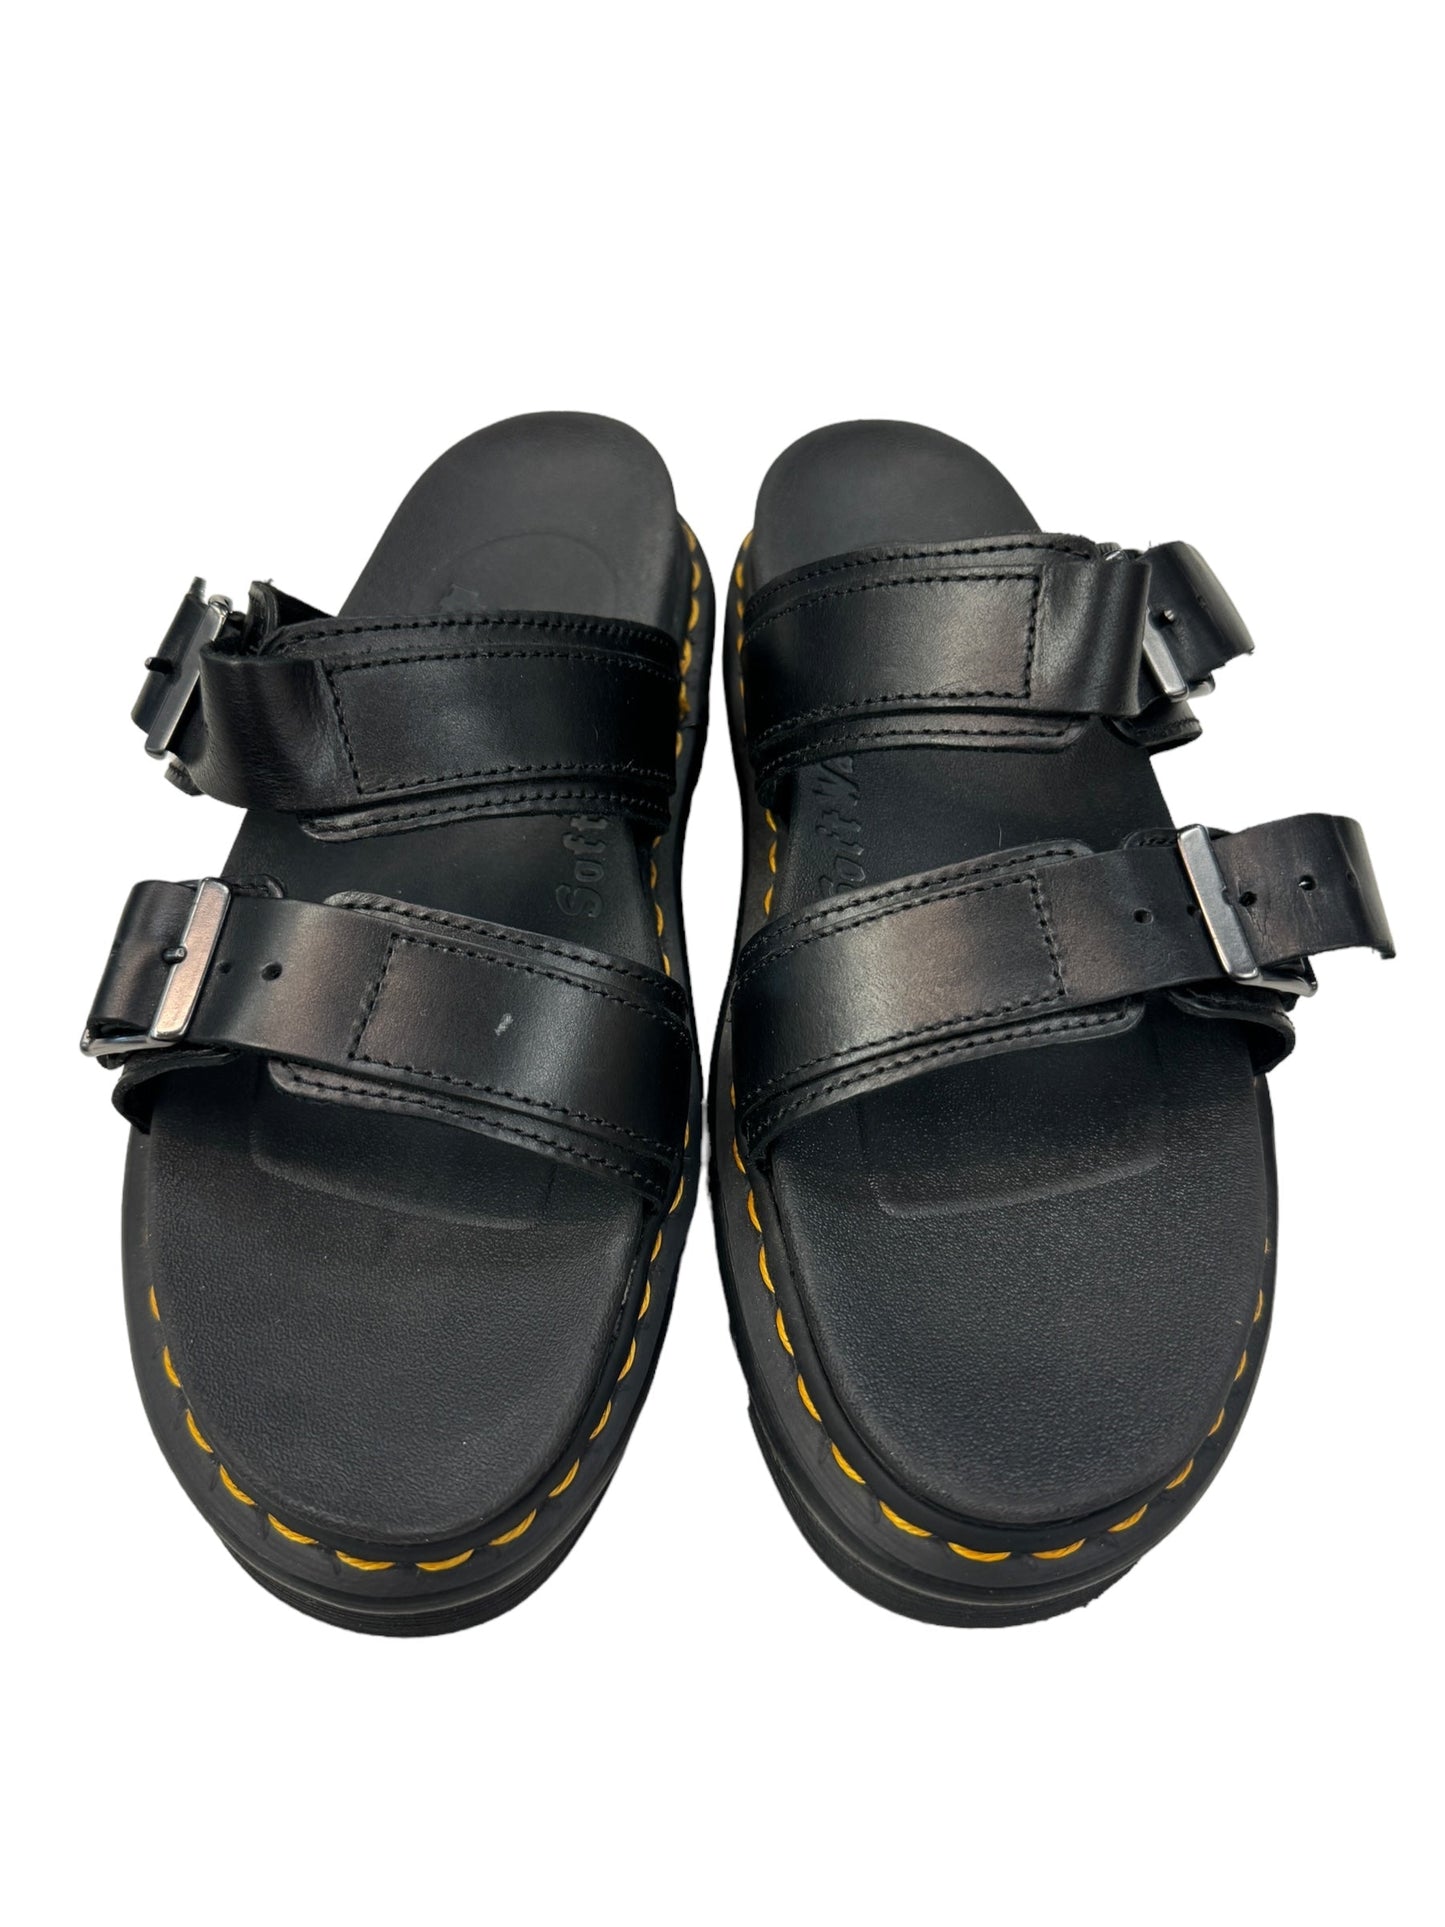 Black Sandals Designer Dr Martens, Size 8